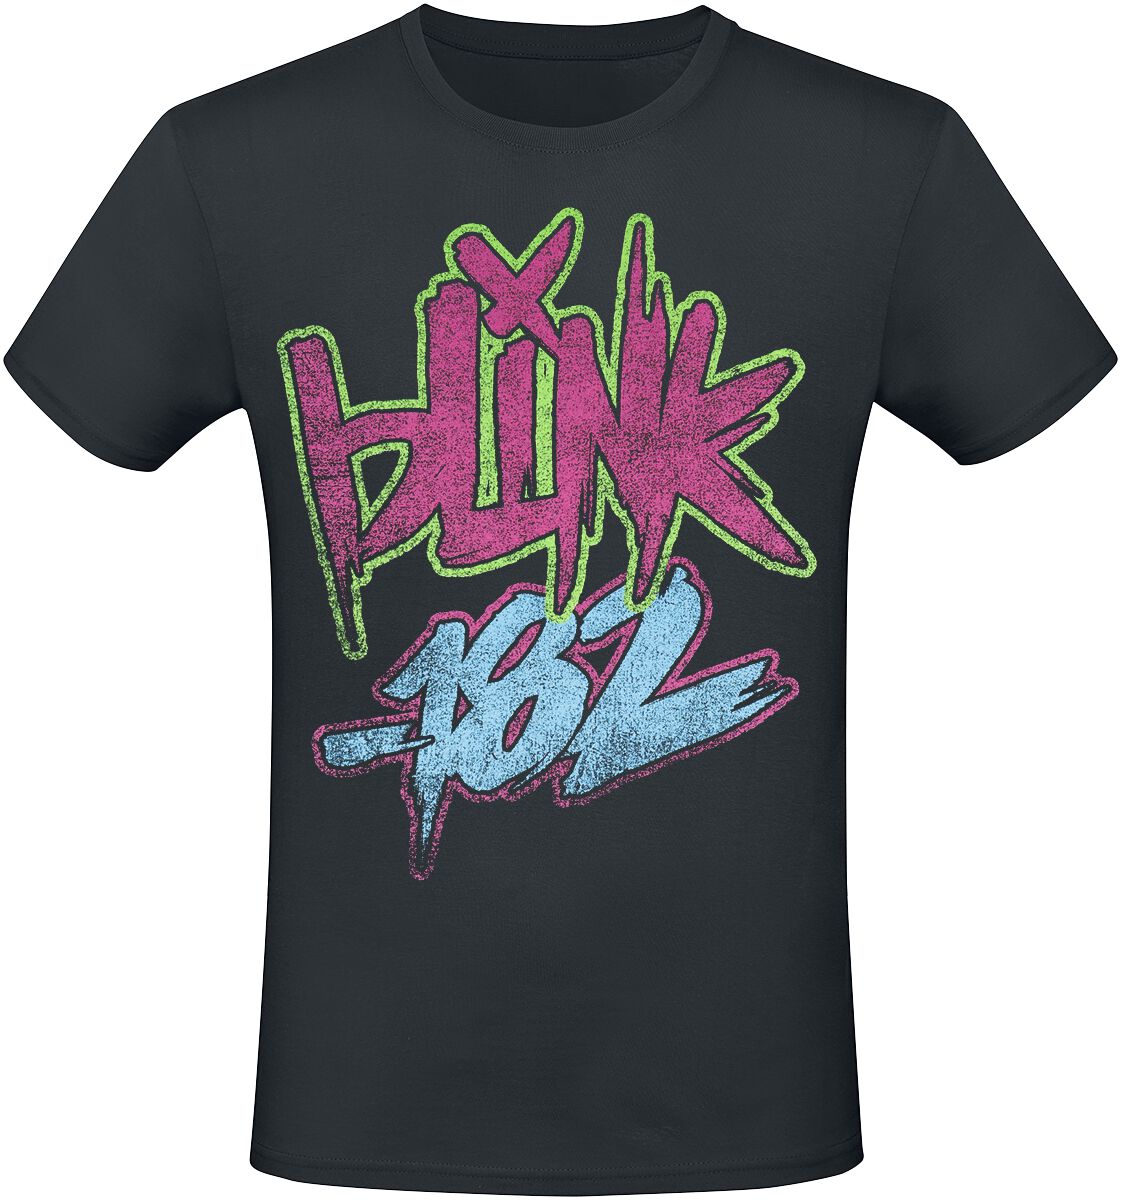 Blink-182 T-Shirt - Text - S bis 3XL - für Männer - Größe 3XL - schwarz  - Lizenziertes Merchandise!